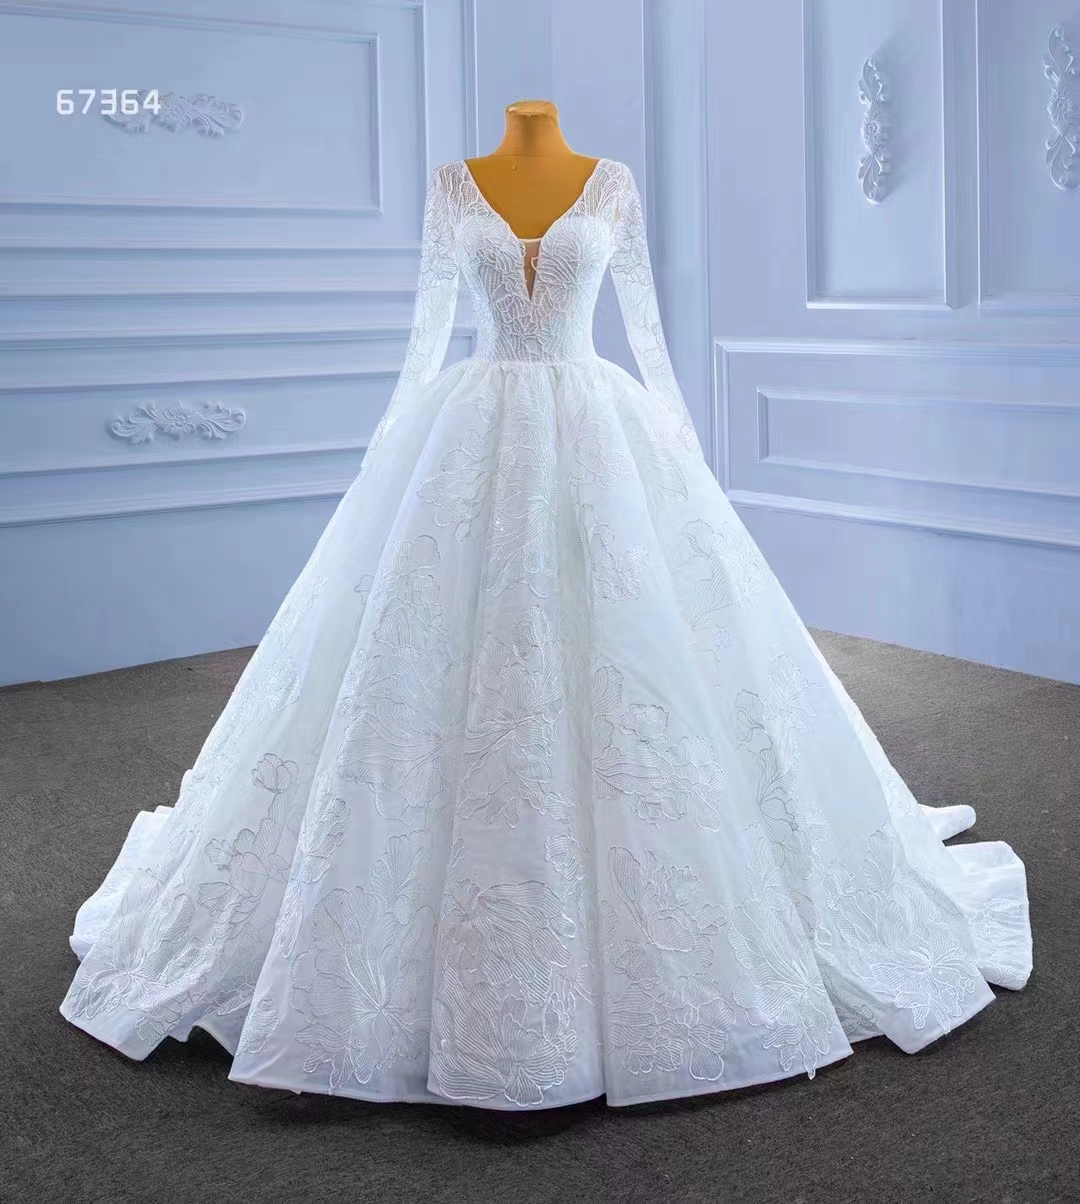 Långärmad vit tyll kalkon brud boll klänning elegant bröllopsklänning sm67364